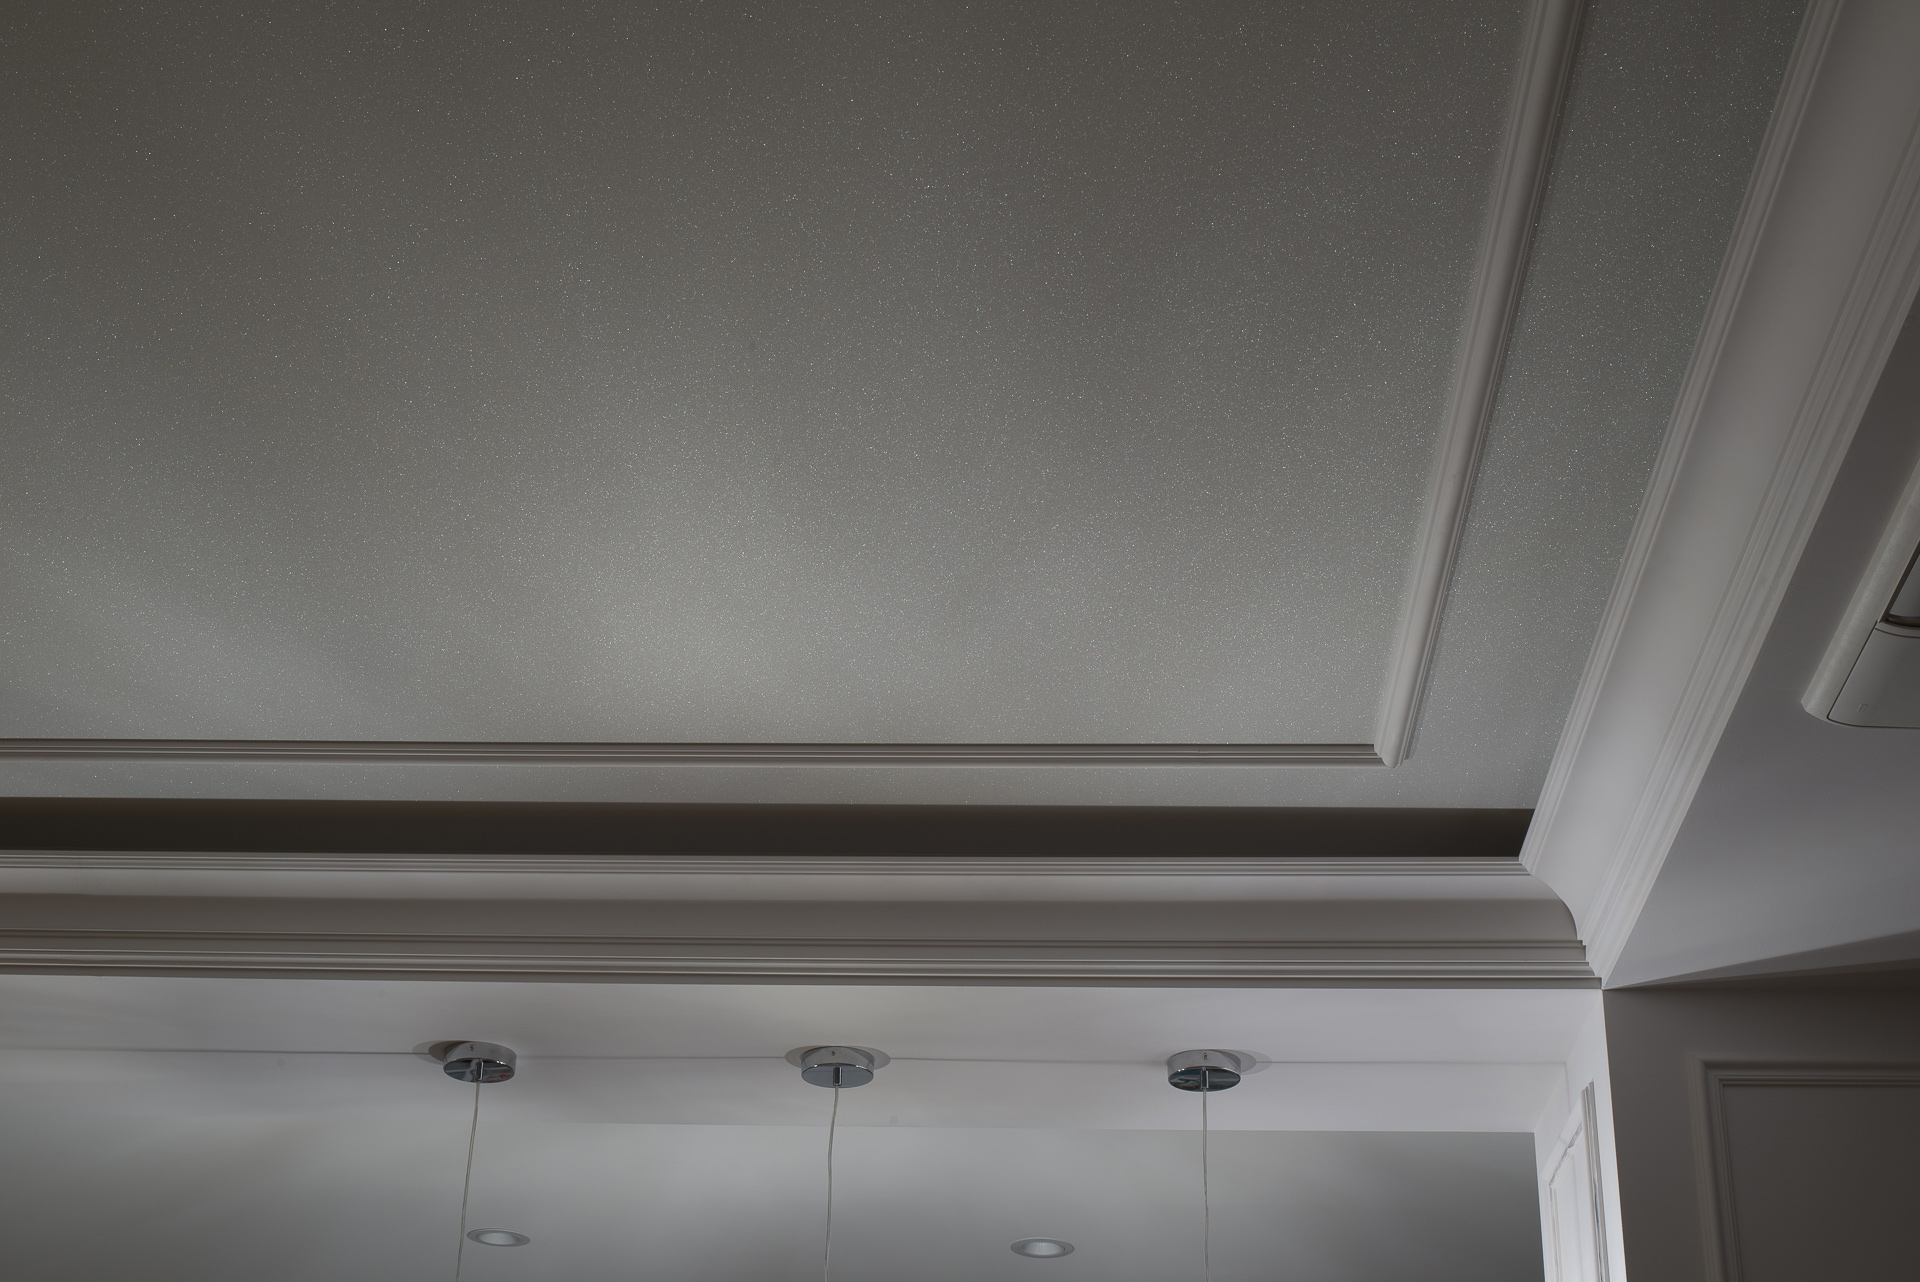 Гостиная, тканевый потолок, потолок с подсветкой, цена, потолок Descor, монтаж тканевых потолков, полотно, потолок с блестками, априори, качественные натяжные потолки, натяжные потолки спб